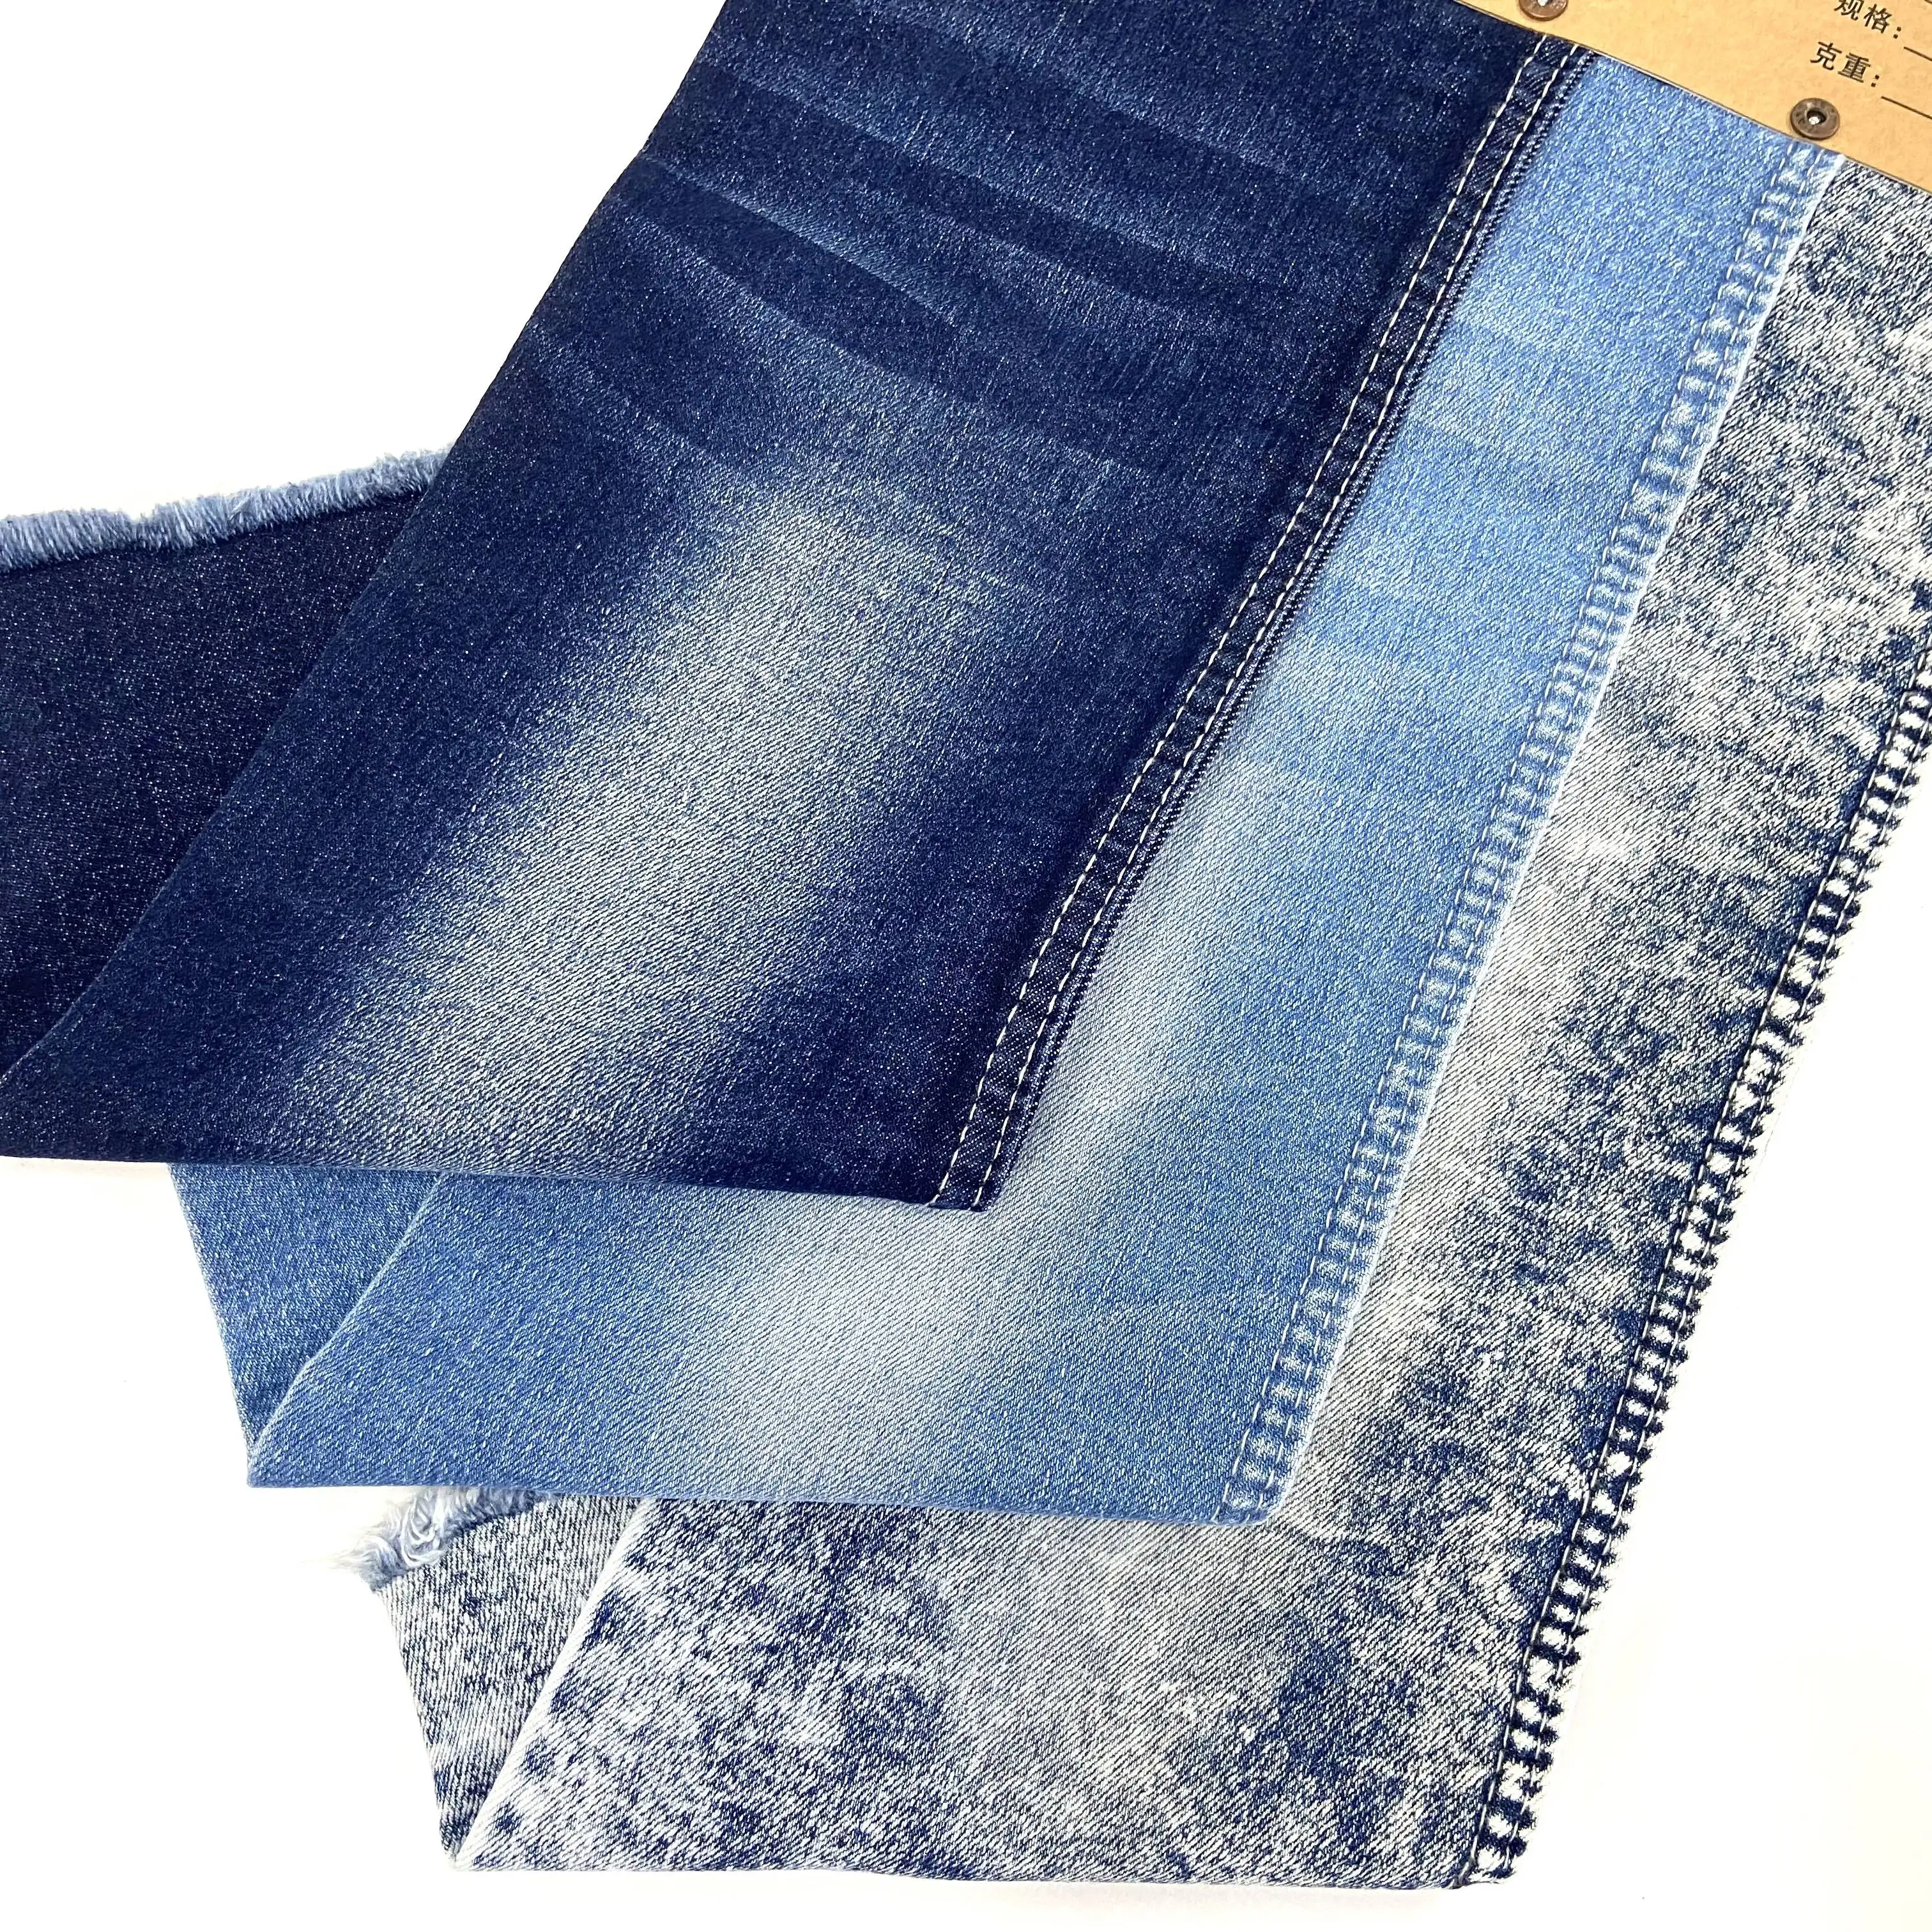 C Baumwolle Denim Jeans Textil stoff aus 11 Unzen Lager erhältlich gewaschen oder ungewaschen geeignet für Bekleidungs hersteller